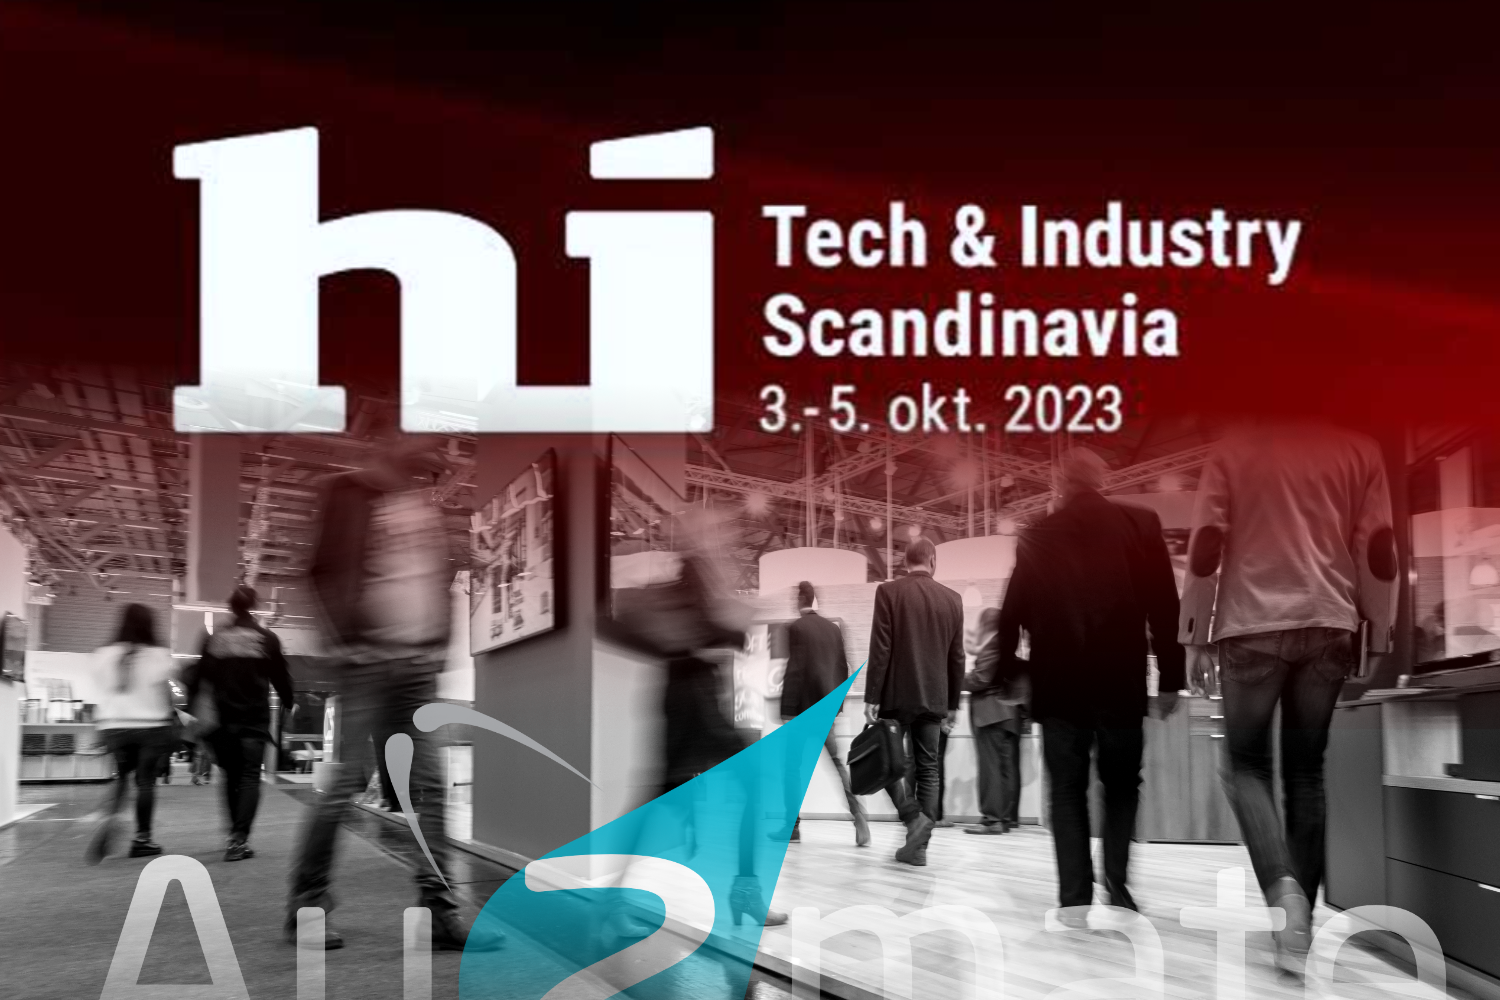 hi Tech & Industry Scandinavia